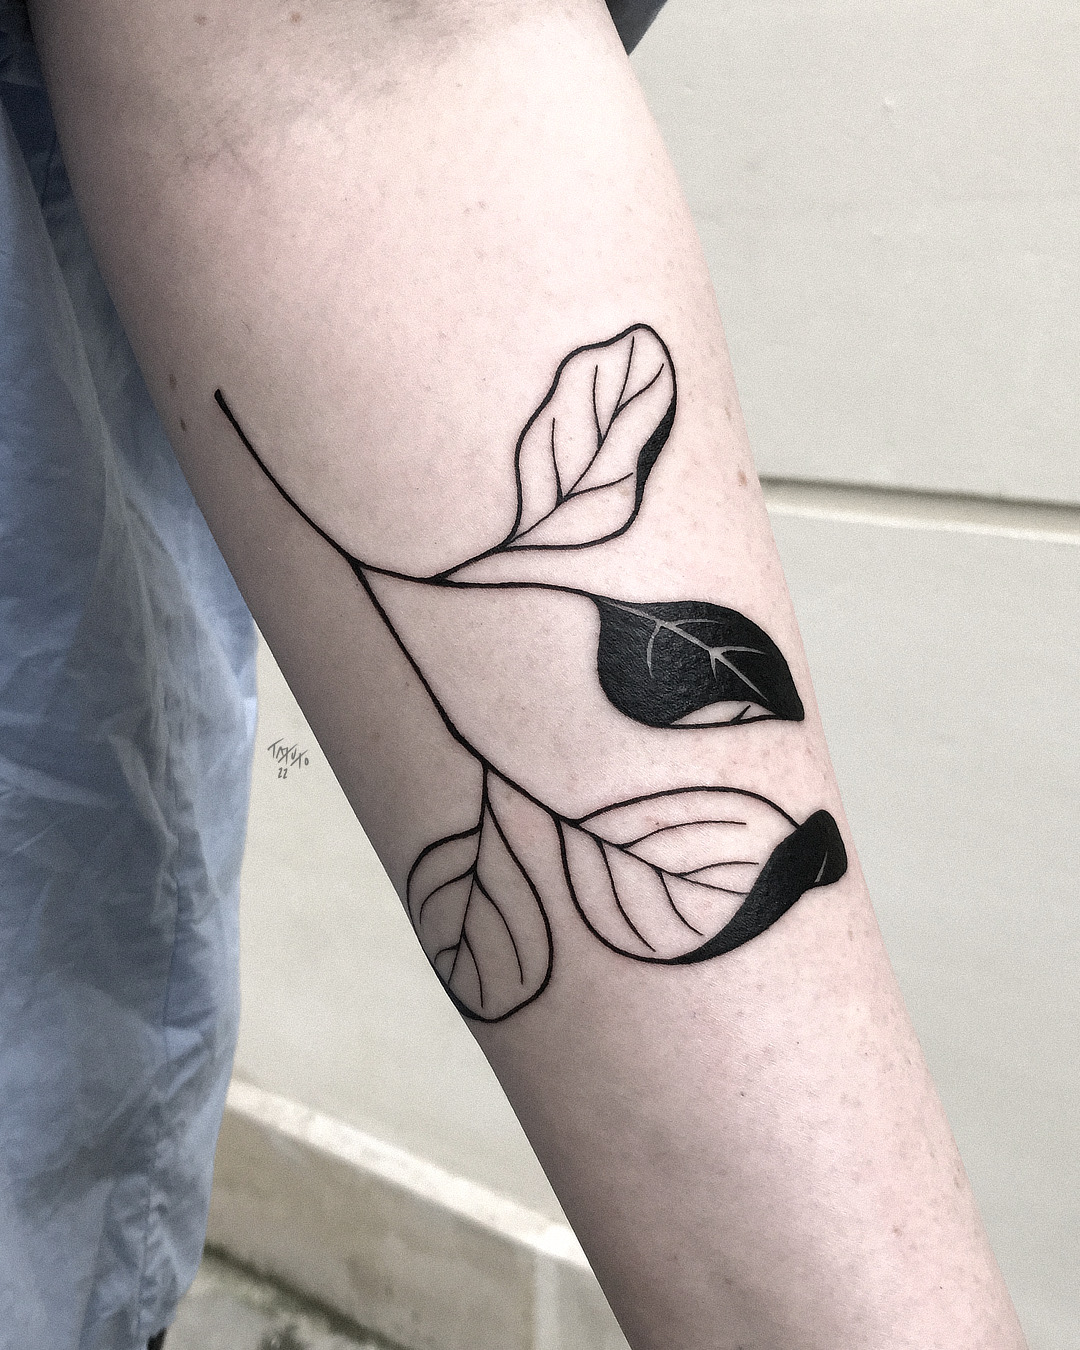 nico-tatuto-tattoo-bordeaux-flash-bastide-tatoueur-feuille-branche-vegetal-japonais-japanese-black-fineline-floral-botanical-meilleur-2